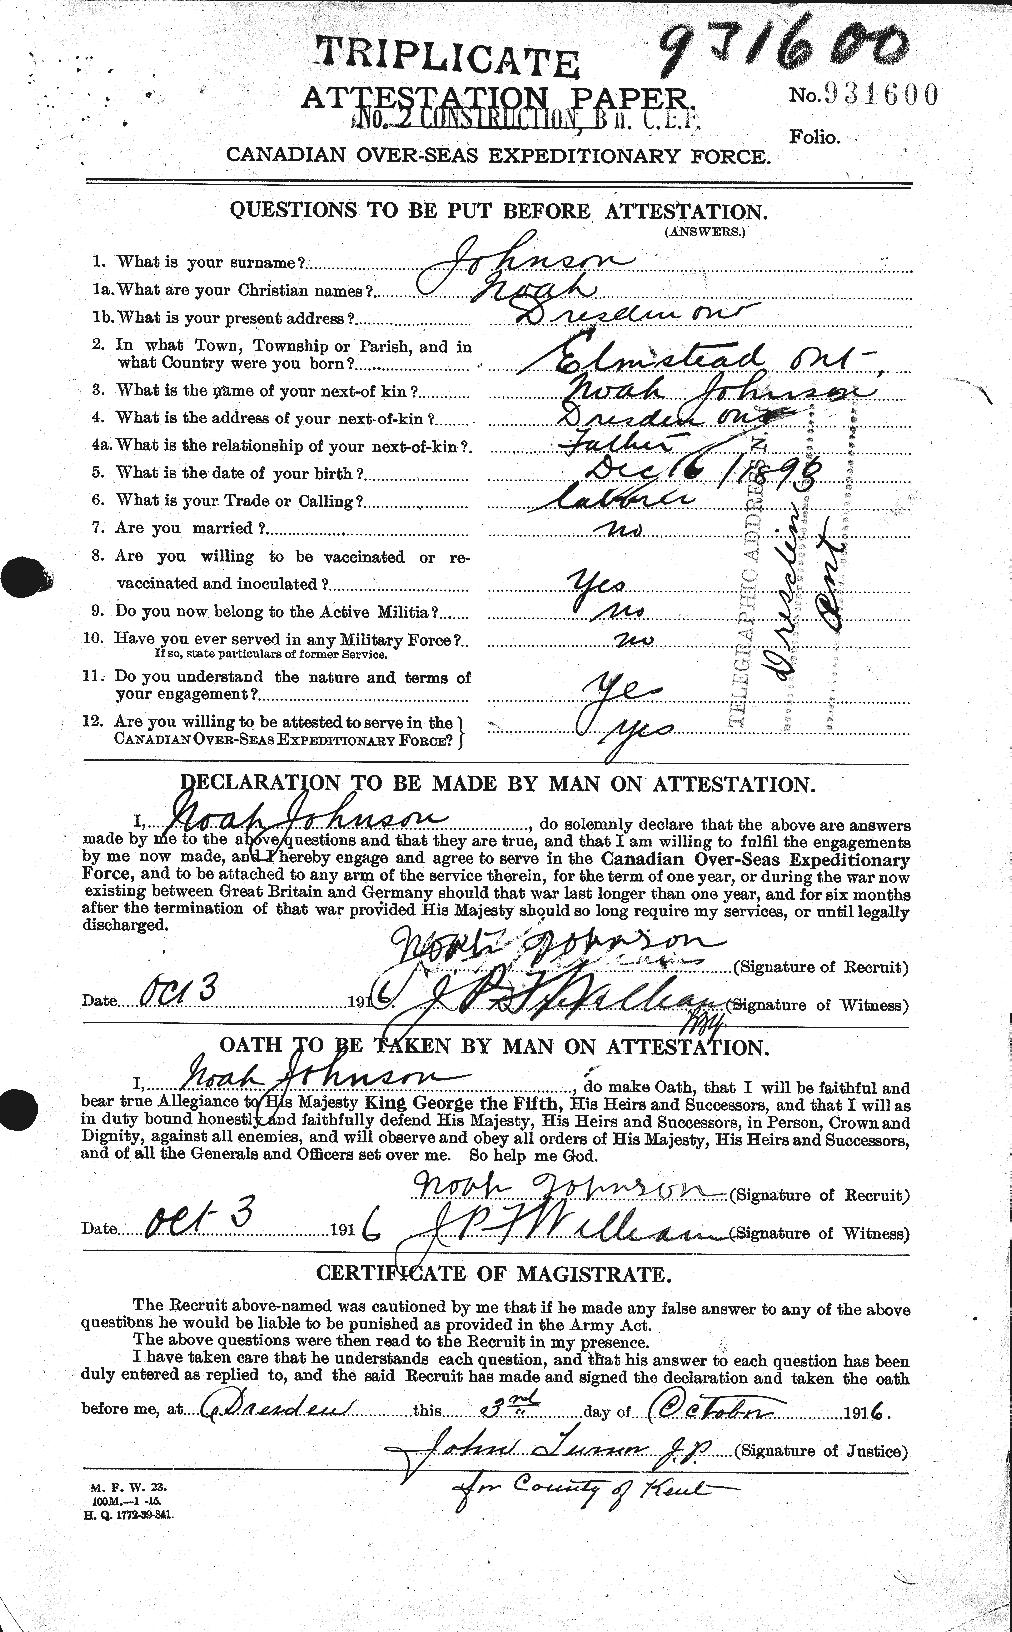 Dossiers du Personnel de la Première Guerre mondiale - CEC 417183a